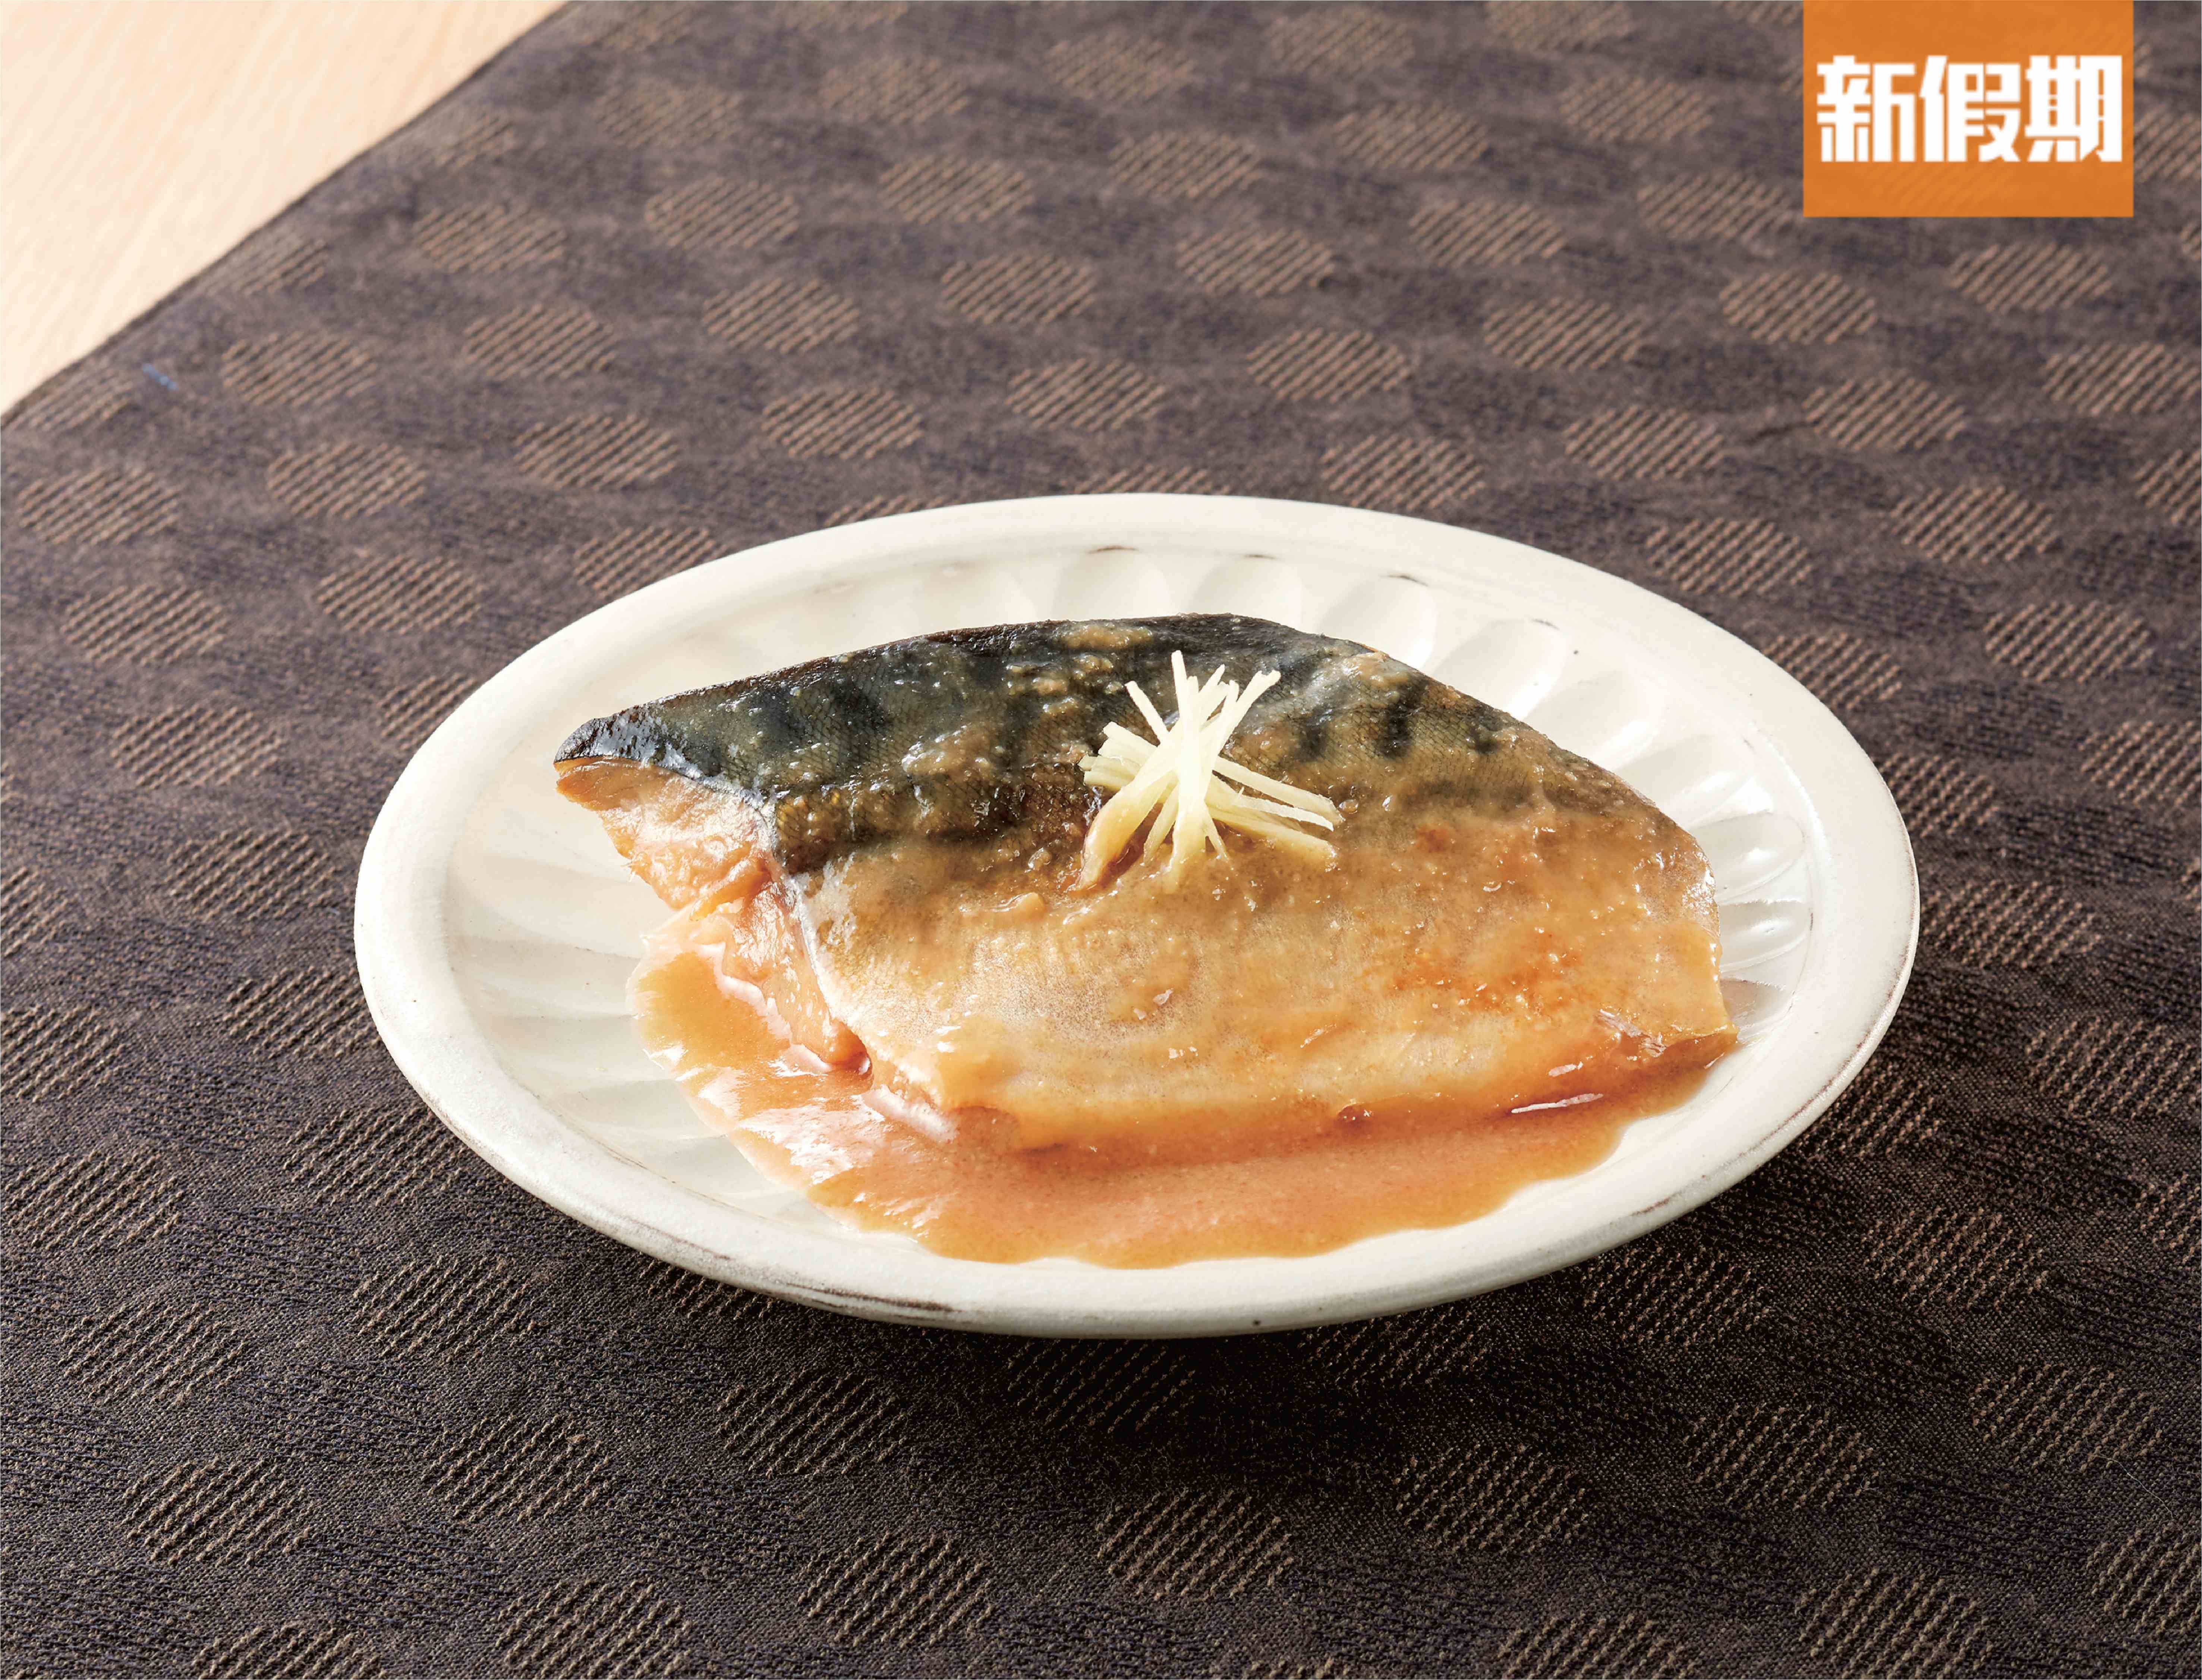 TASTING TABLE Japan Premium "鯖魚味噌煮